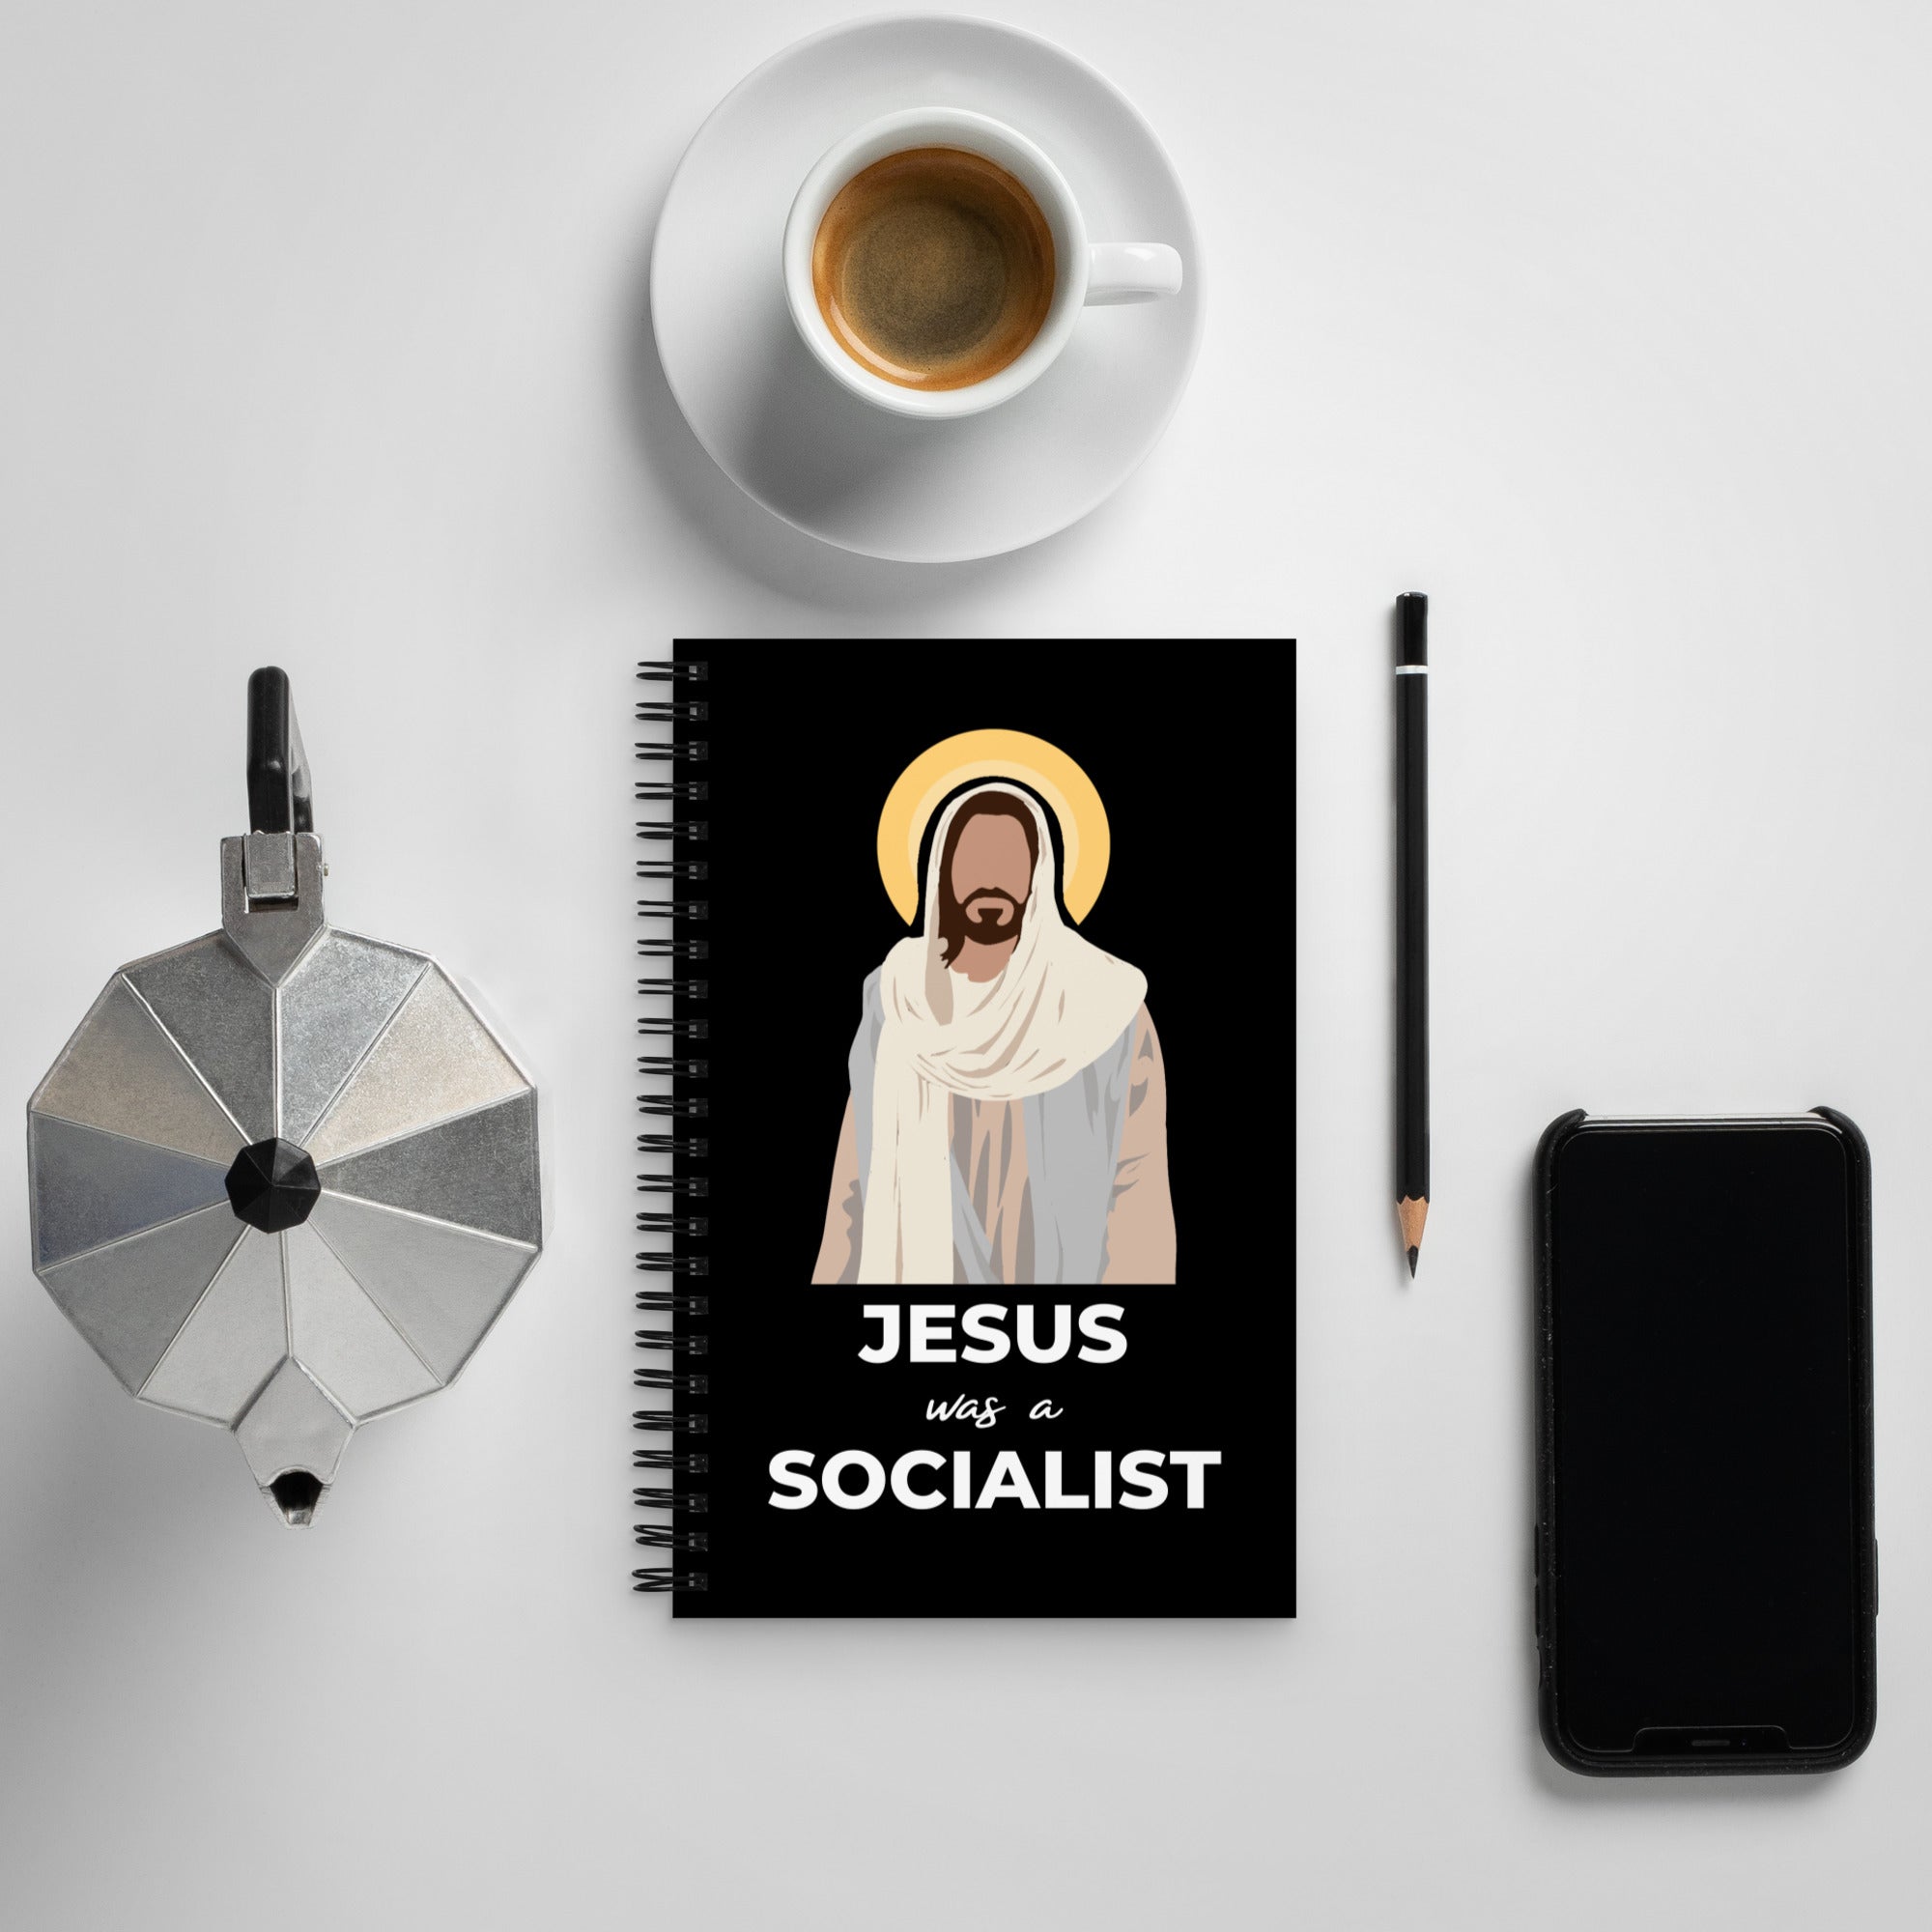 Jesus Was A Socialist - Spiral Notebook